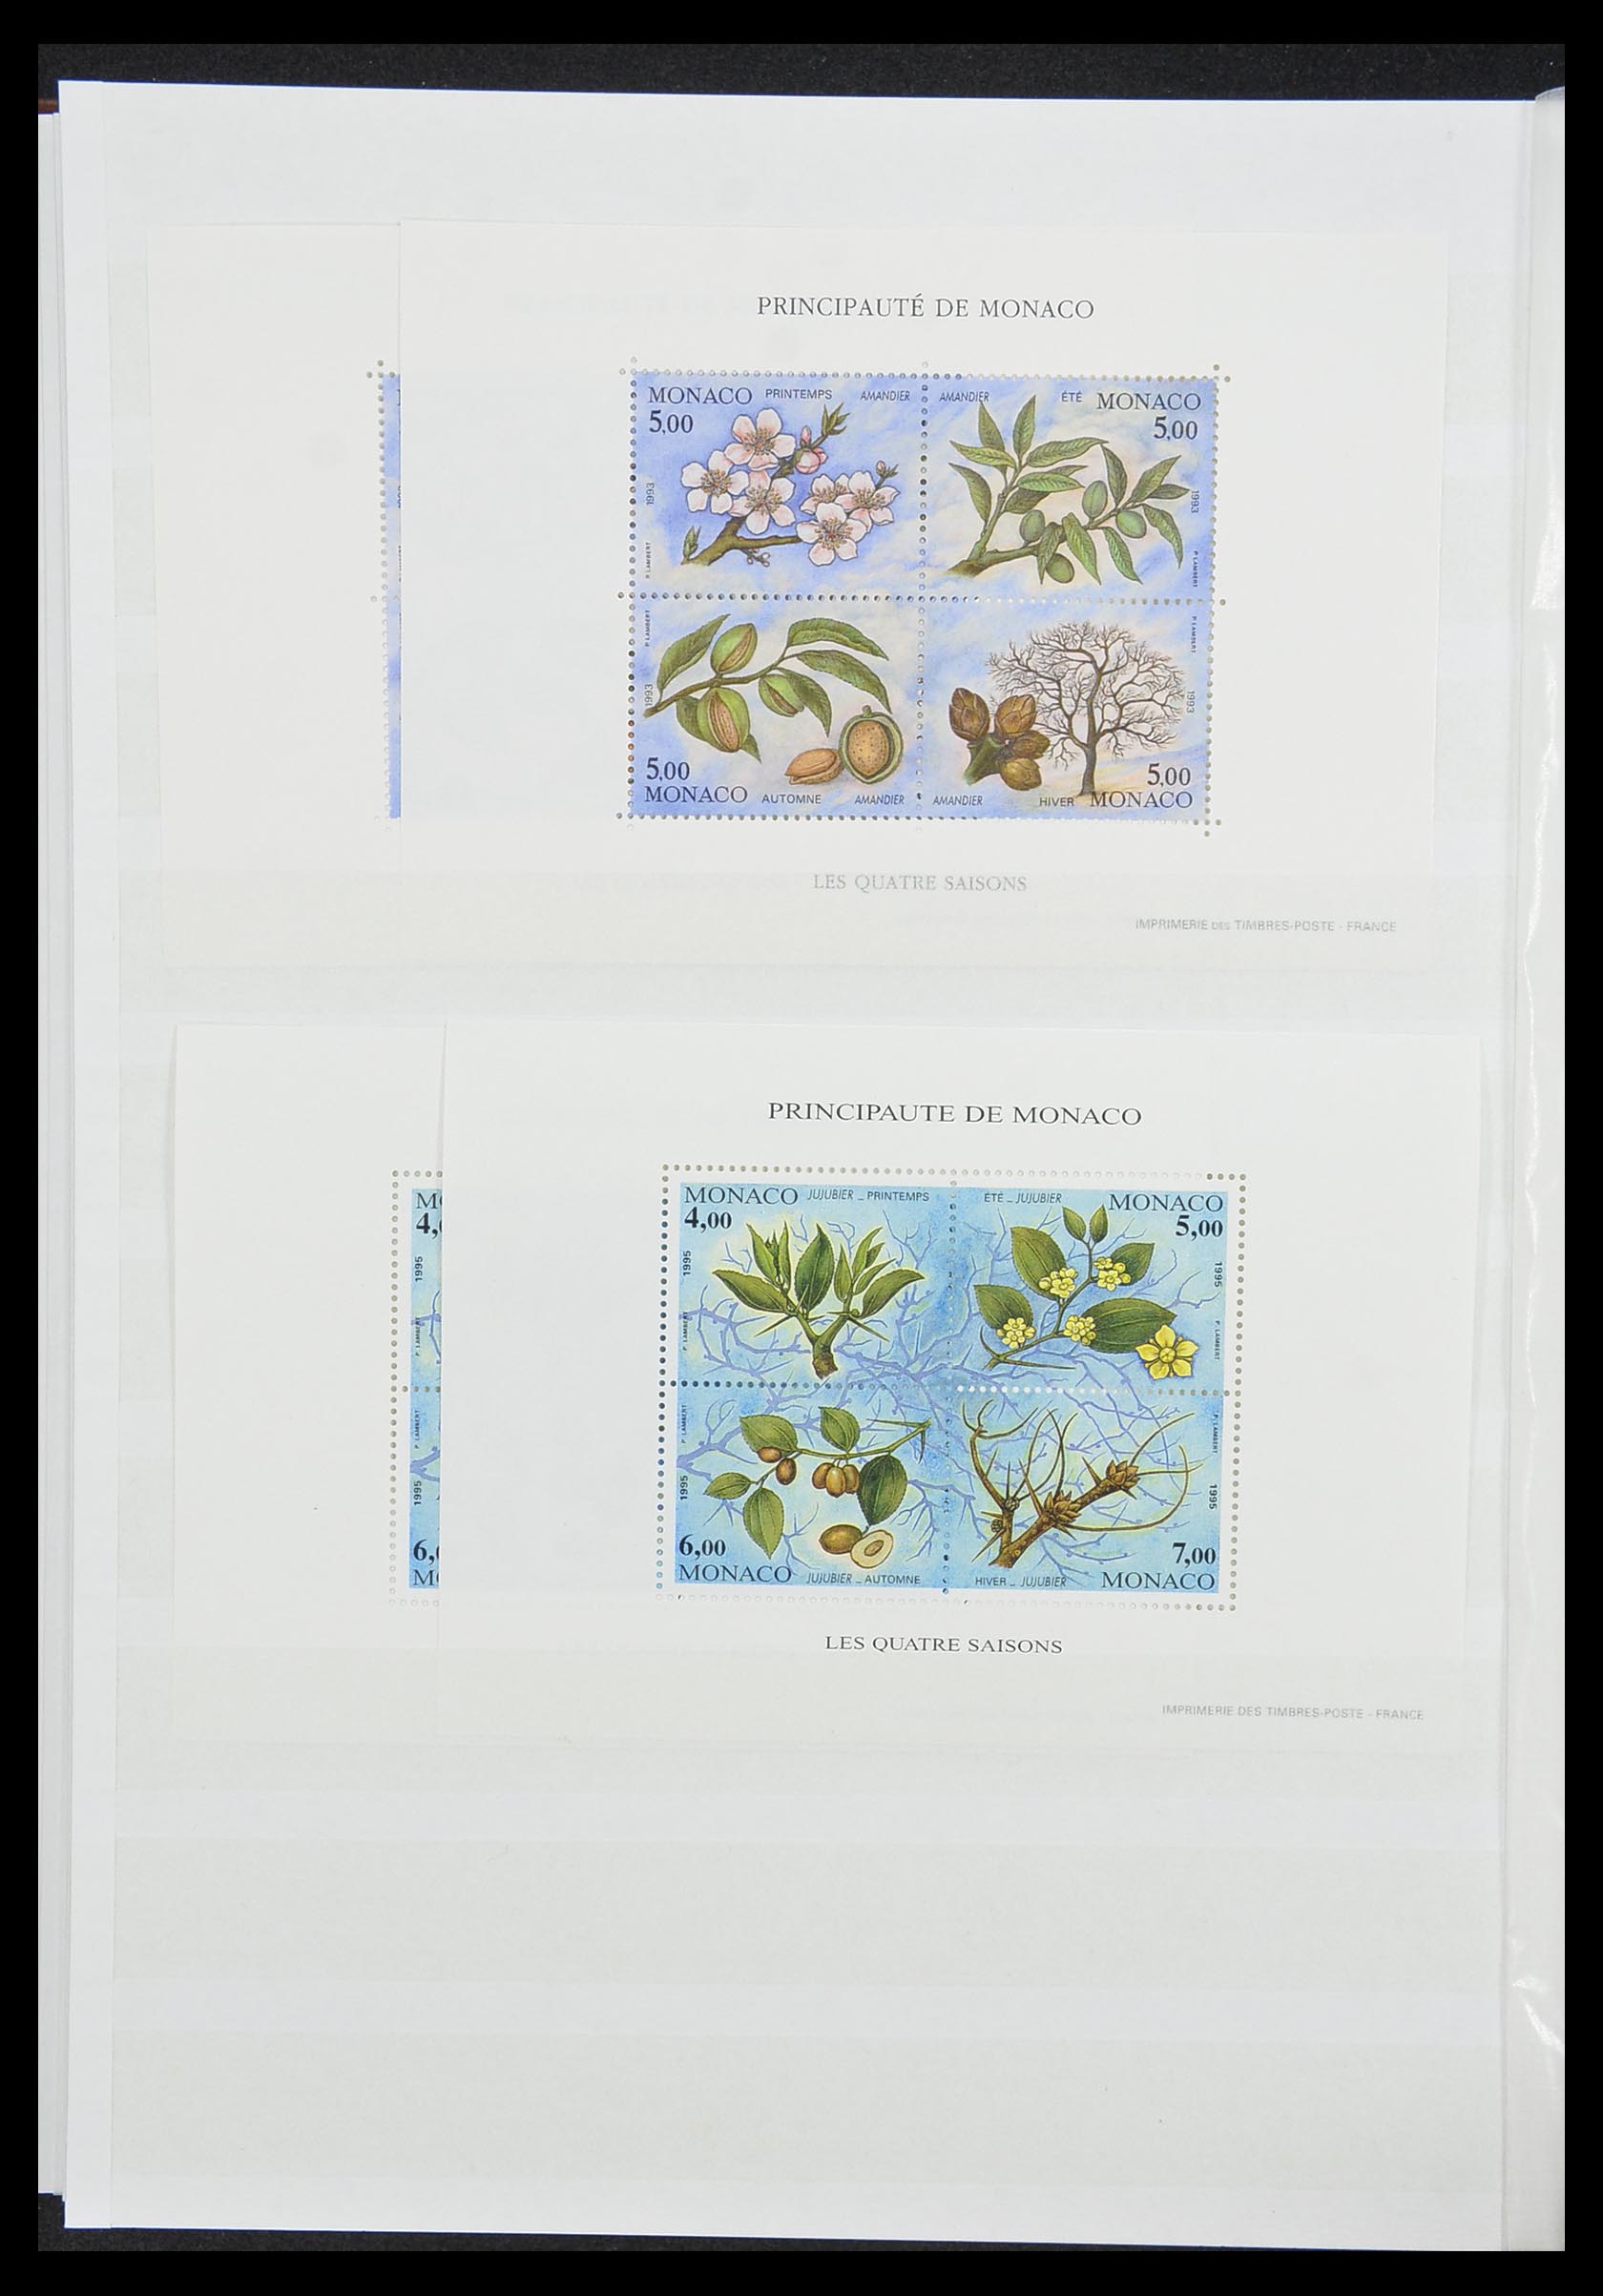 33833 024 - Stamp collection 33833 Monaco souvenir sheets 1979-2015.